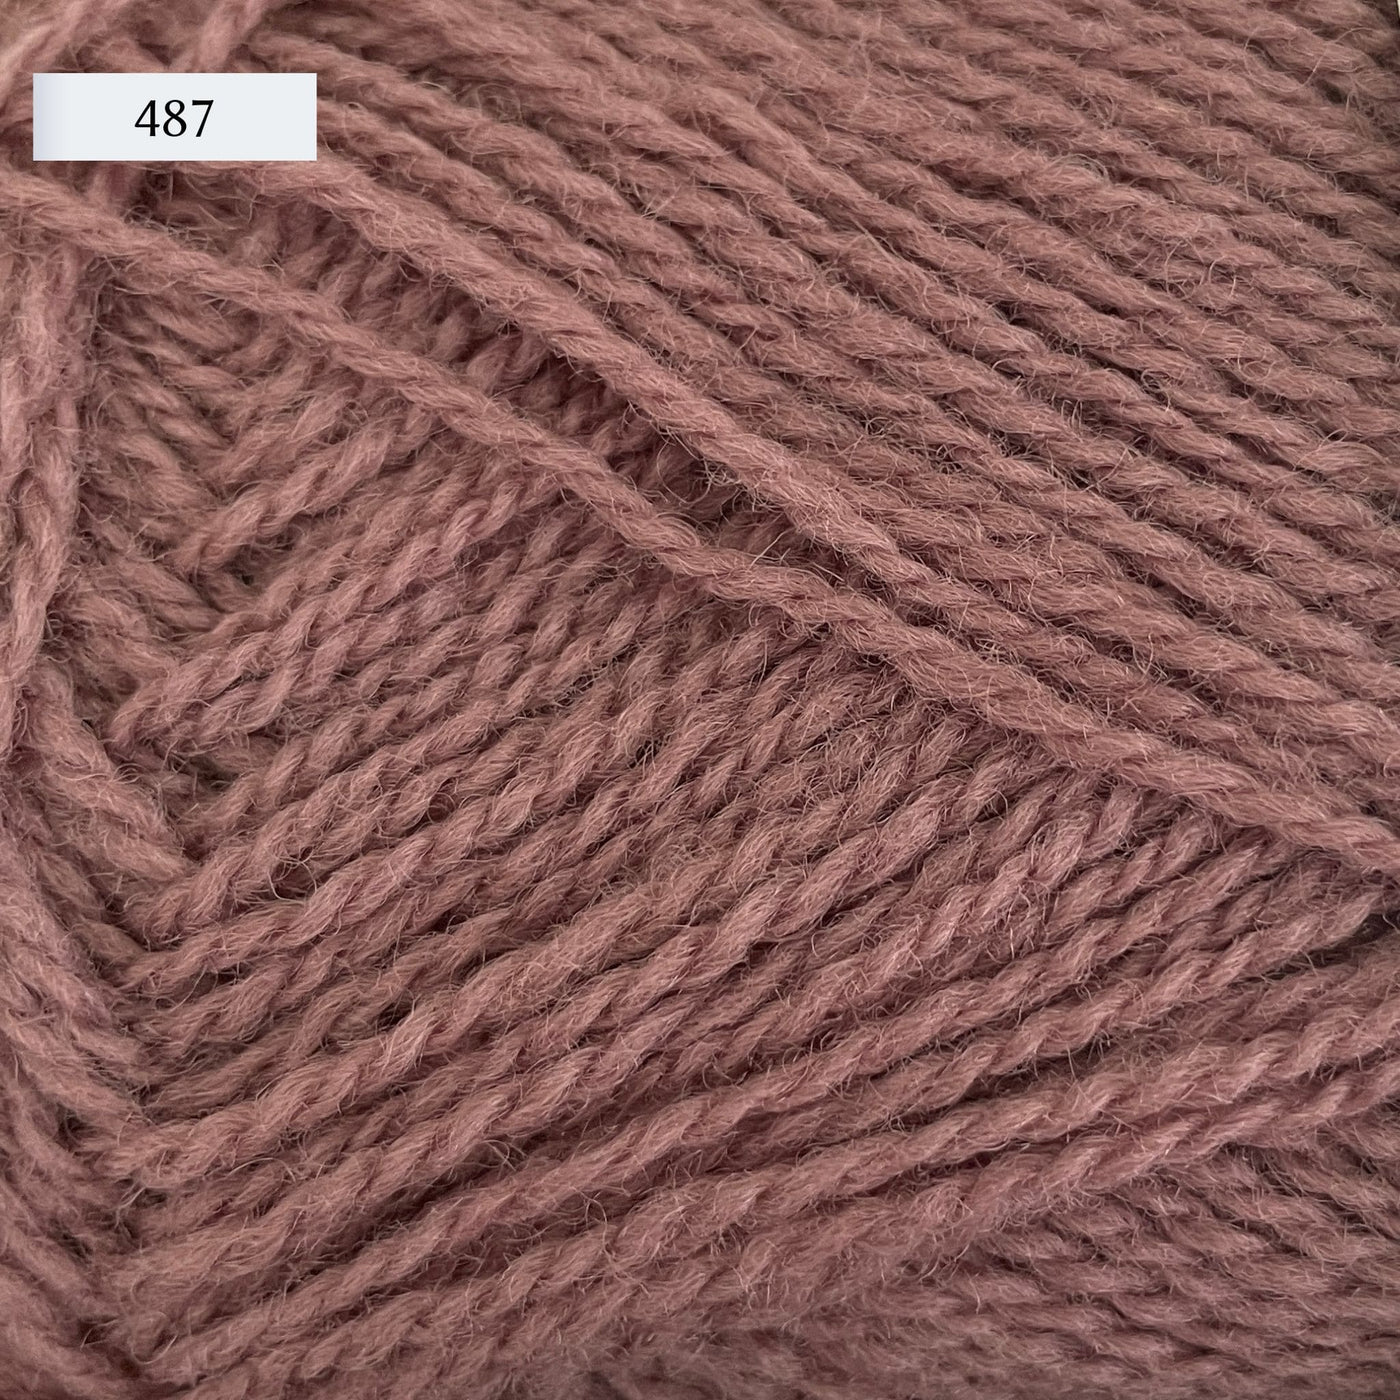 Rauma Finullgarn, a fingering/sport weight yarn, in color 487, a dusty mauve